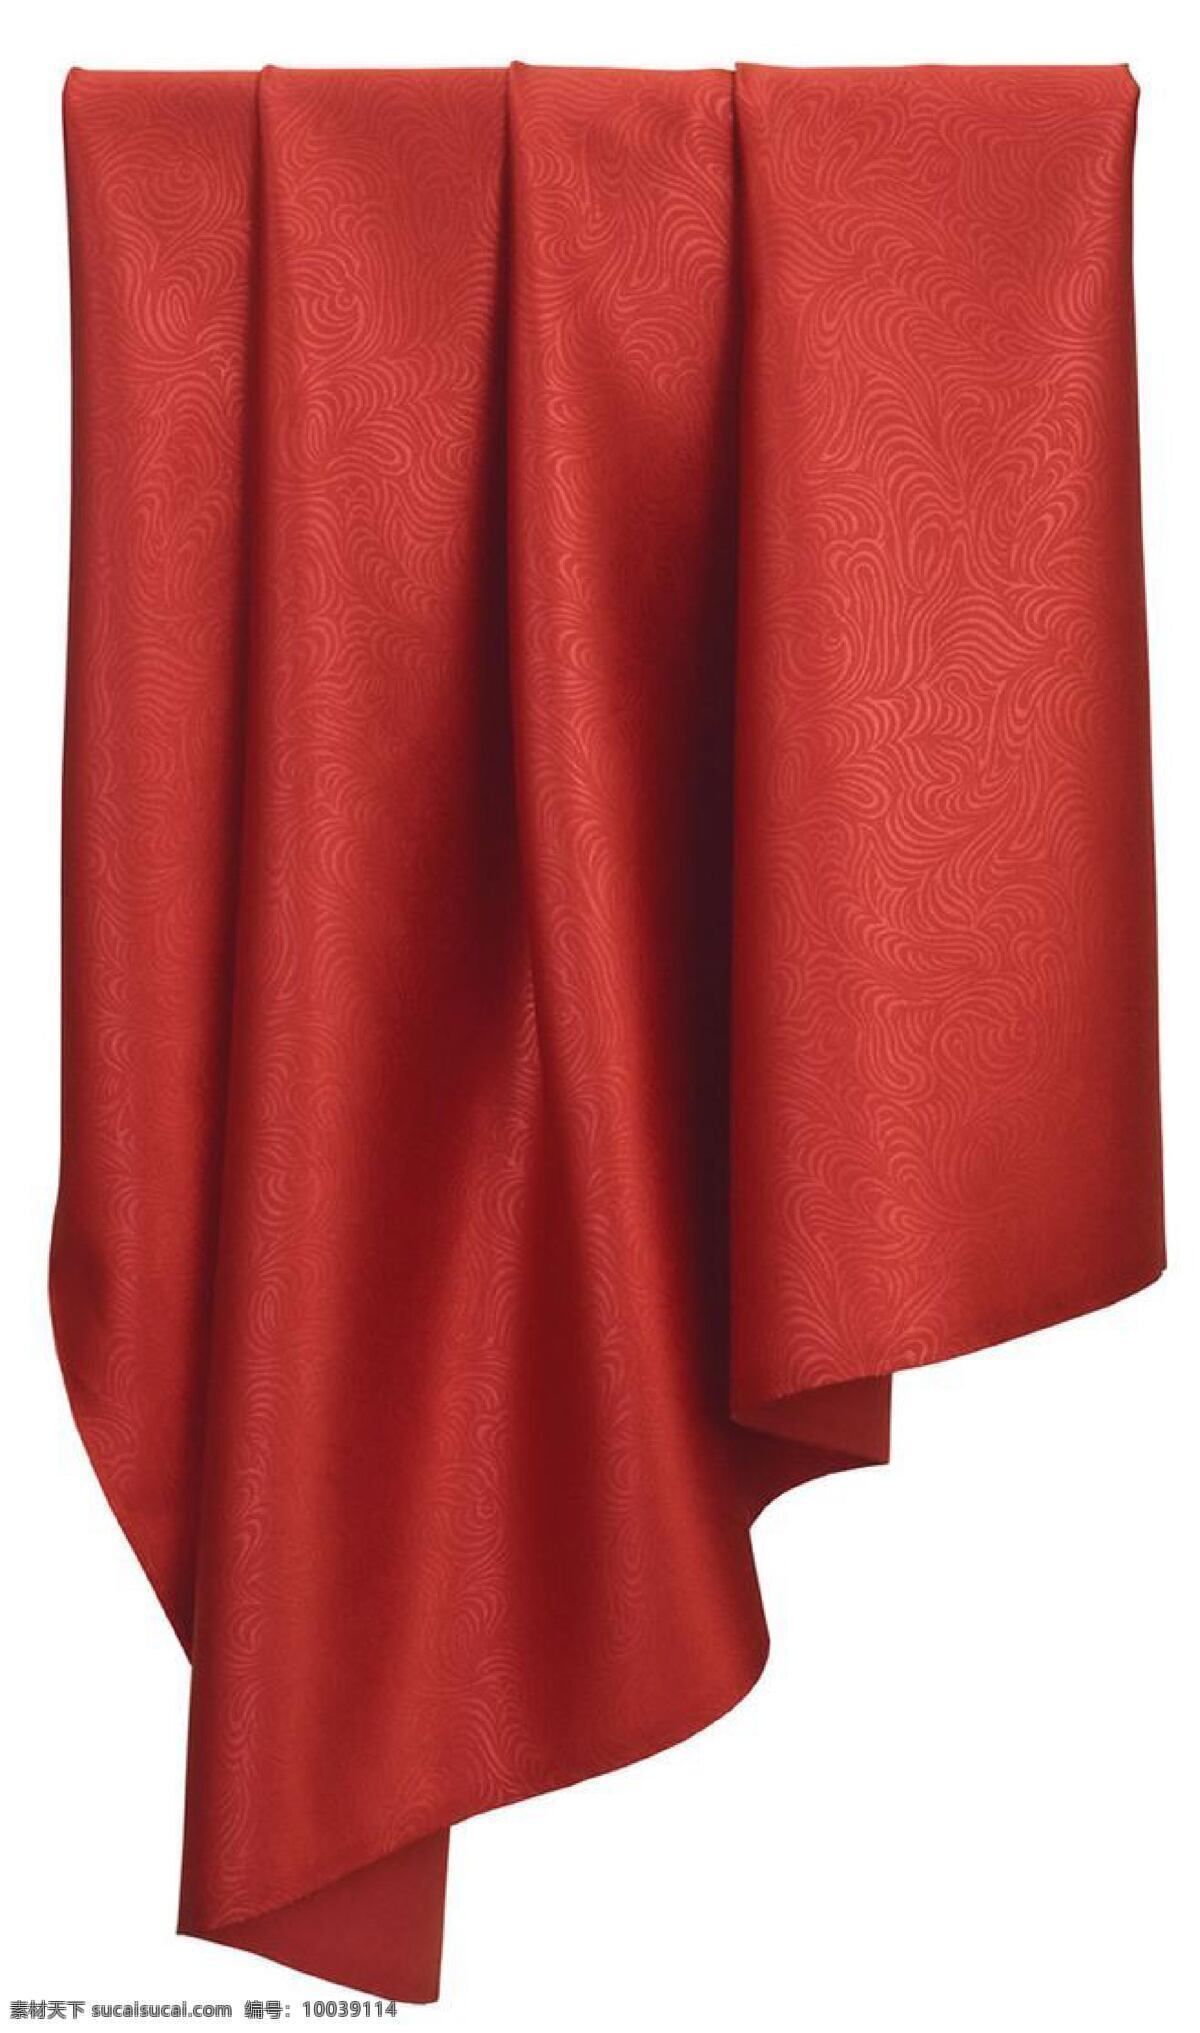 红色窗帘图片 海报 背景 元素 国庆节 底纹边框 背景底纹